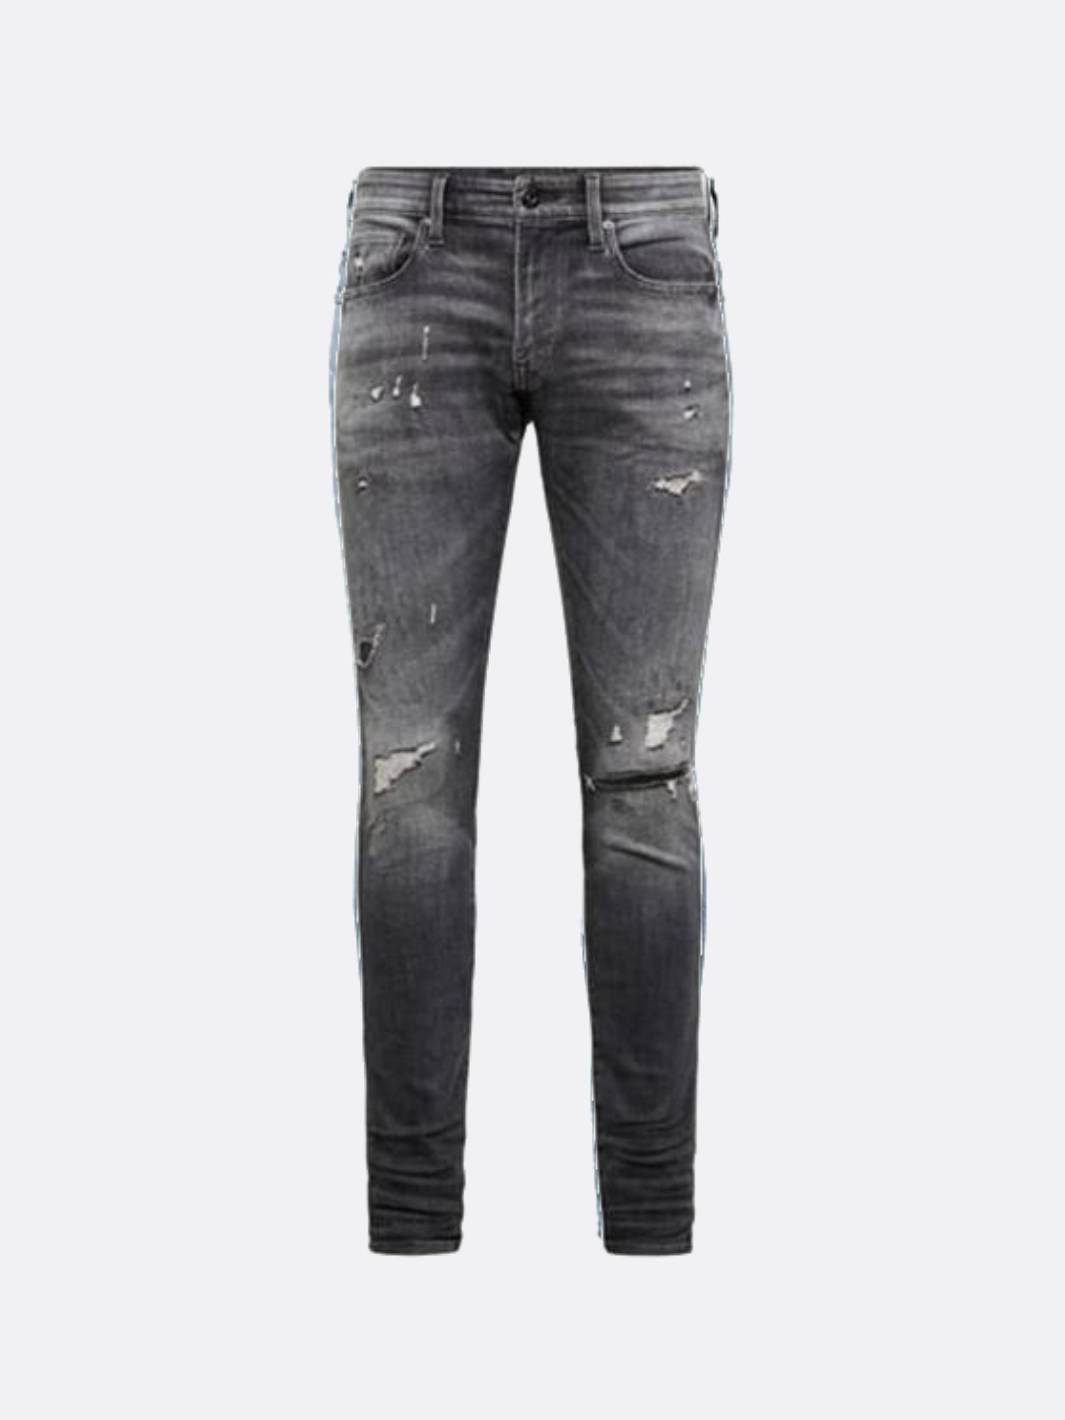 G-STAR INC - - Revend Skinny Jeans - Vintage Basalt Grey/Bl - Nohble